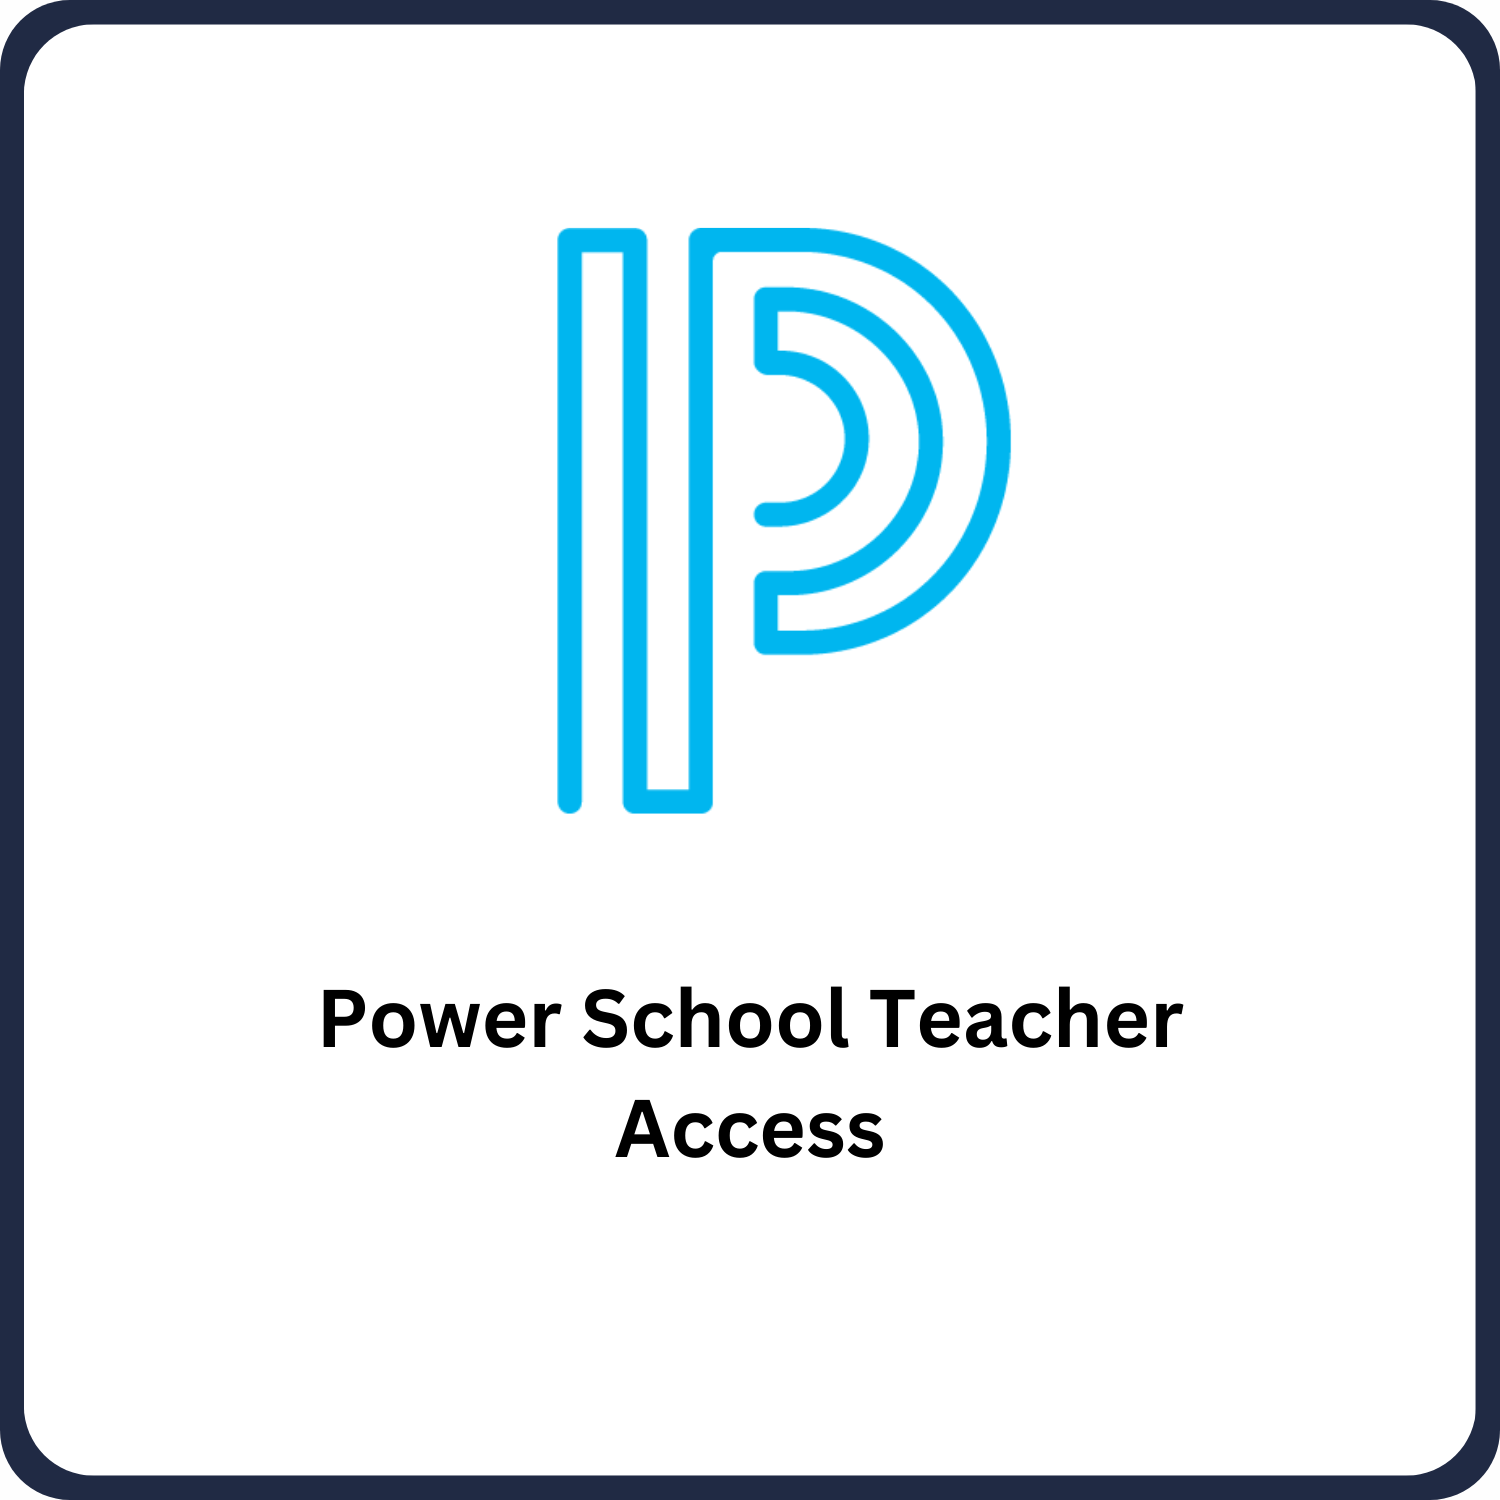 Power School Teacher Access